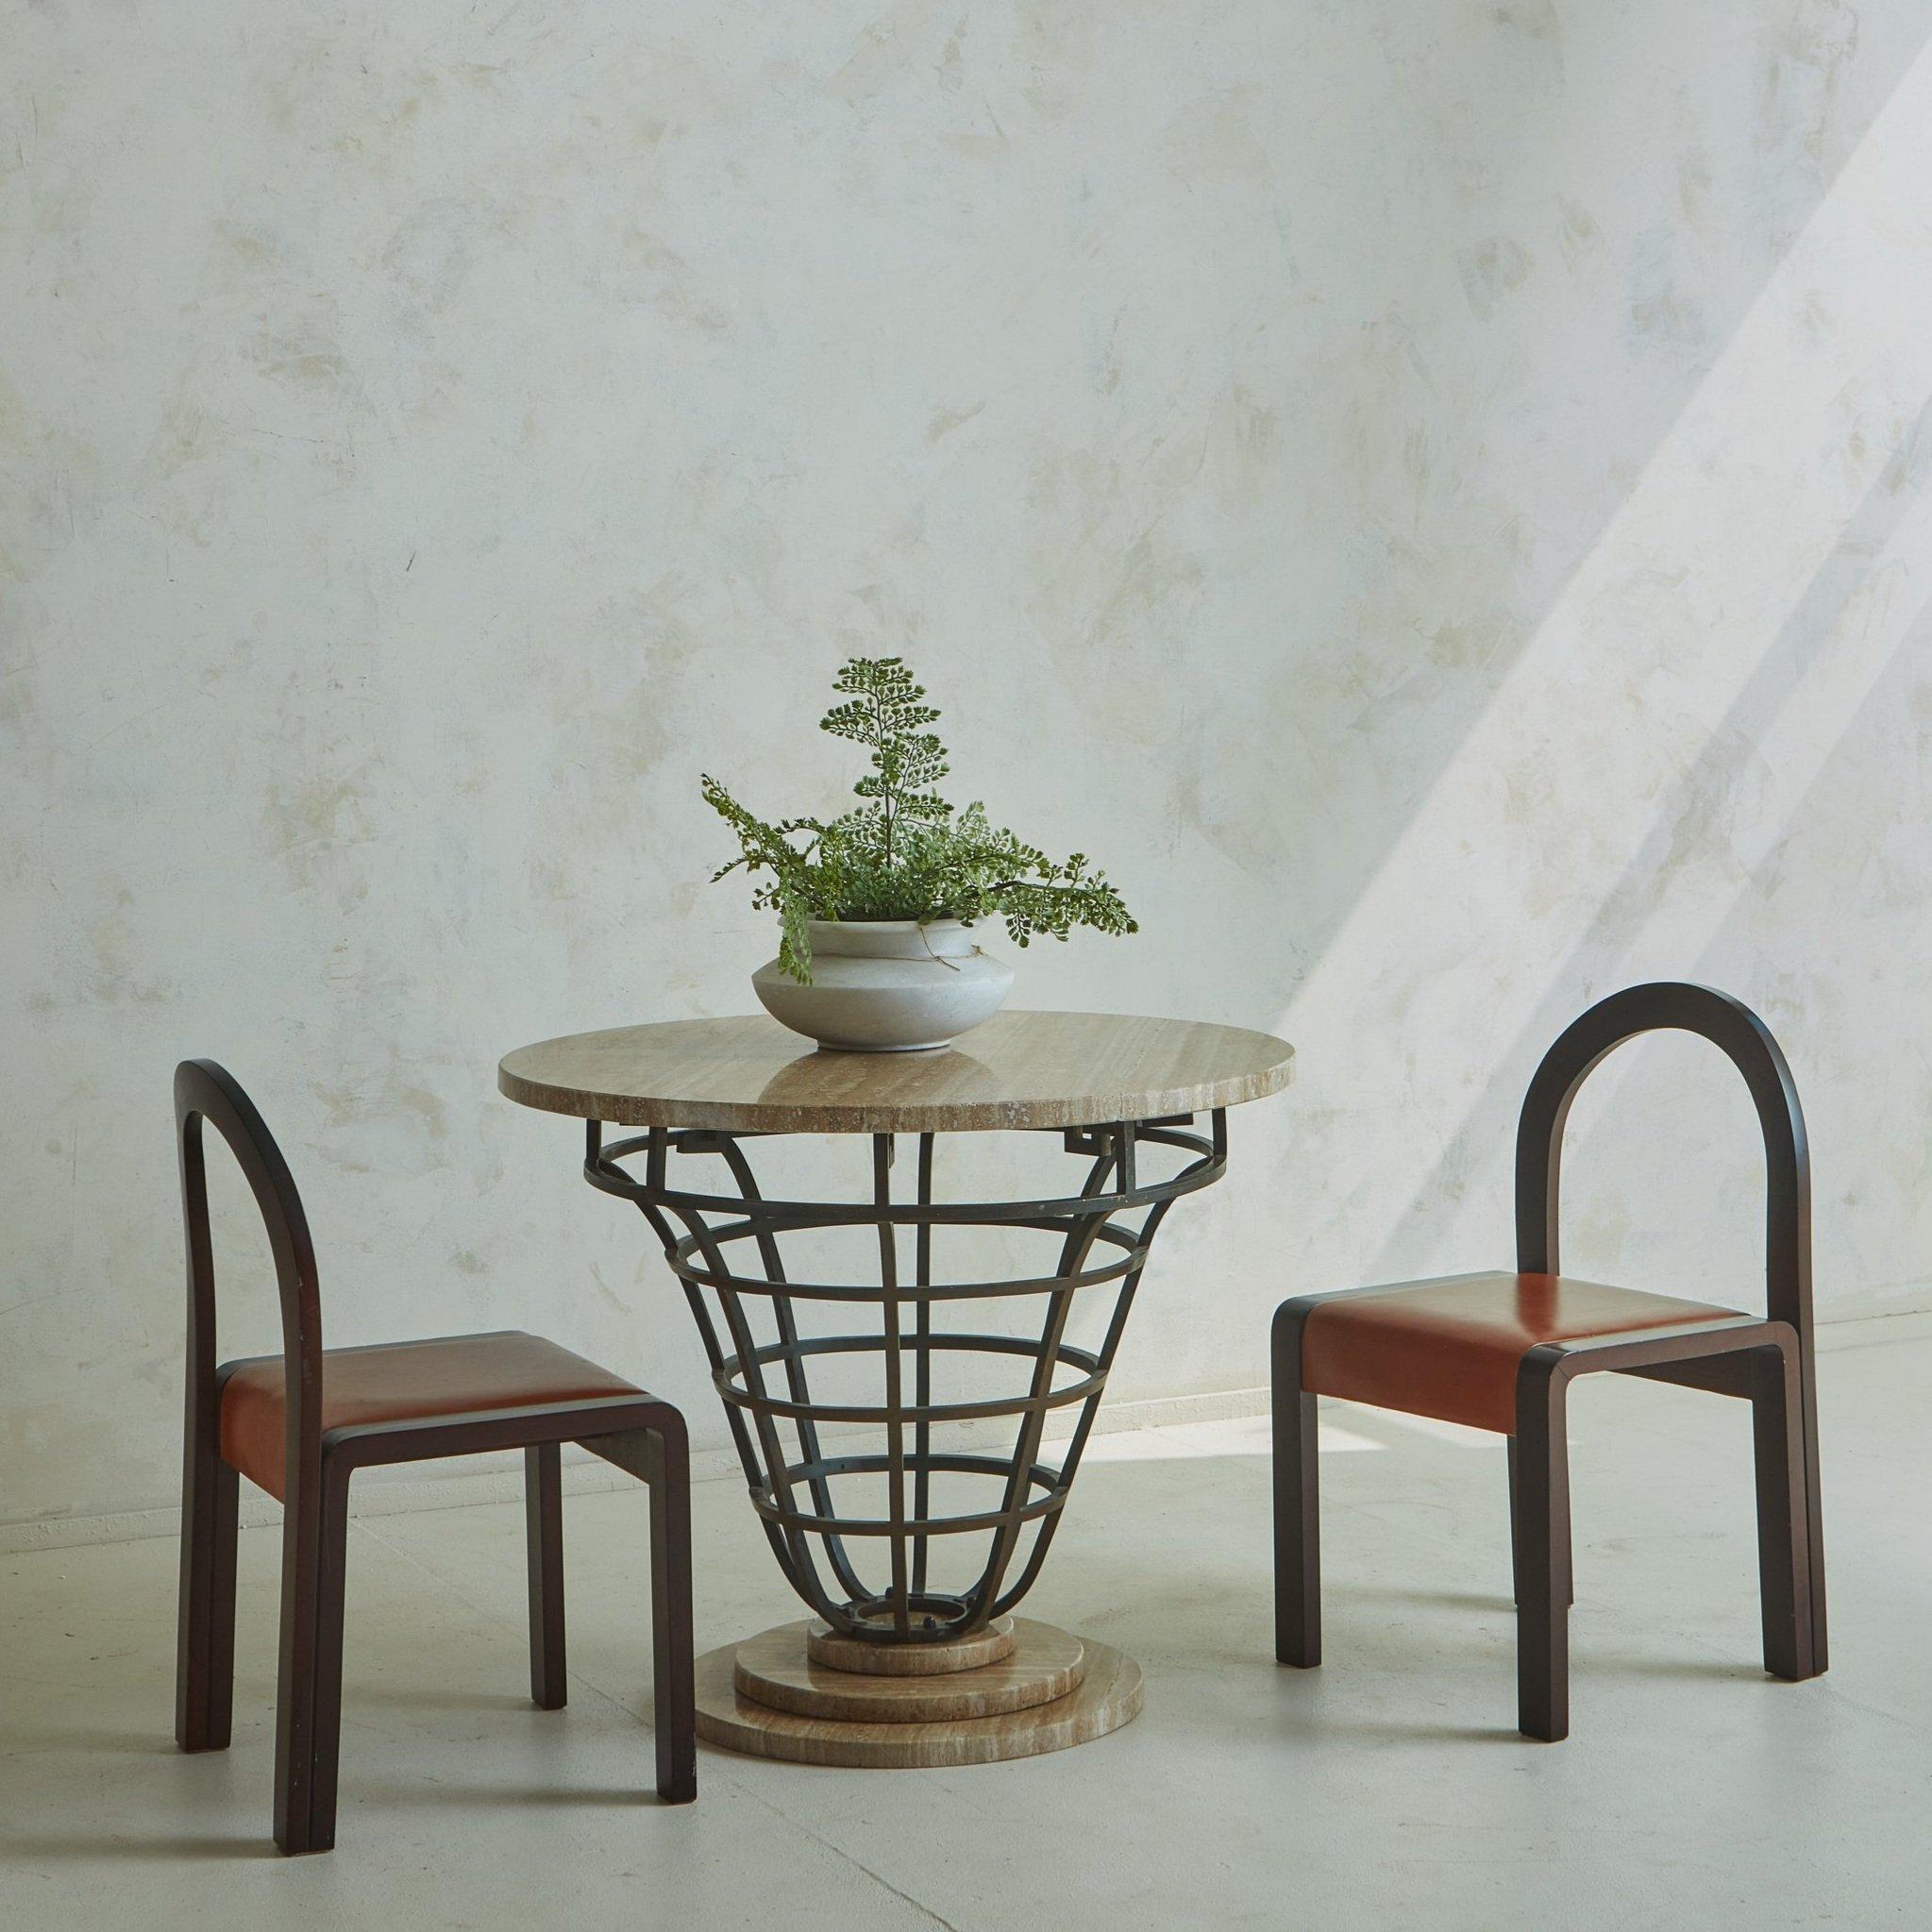 Ein Satz von 4 italienischen Esszimmerstühlen im Vintage-Stil mit stattlichen Bugholzrahmen, dramatisch gewölbten Sitzlehnen und rechteckigen Blockbeinen. Die gebeizten Holzrahmen bilden einen schönen Kontrast zu den cognacfarbenen Ledersitzen, die